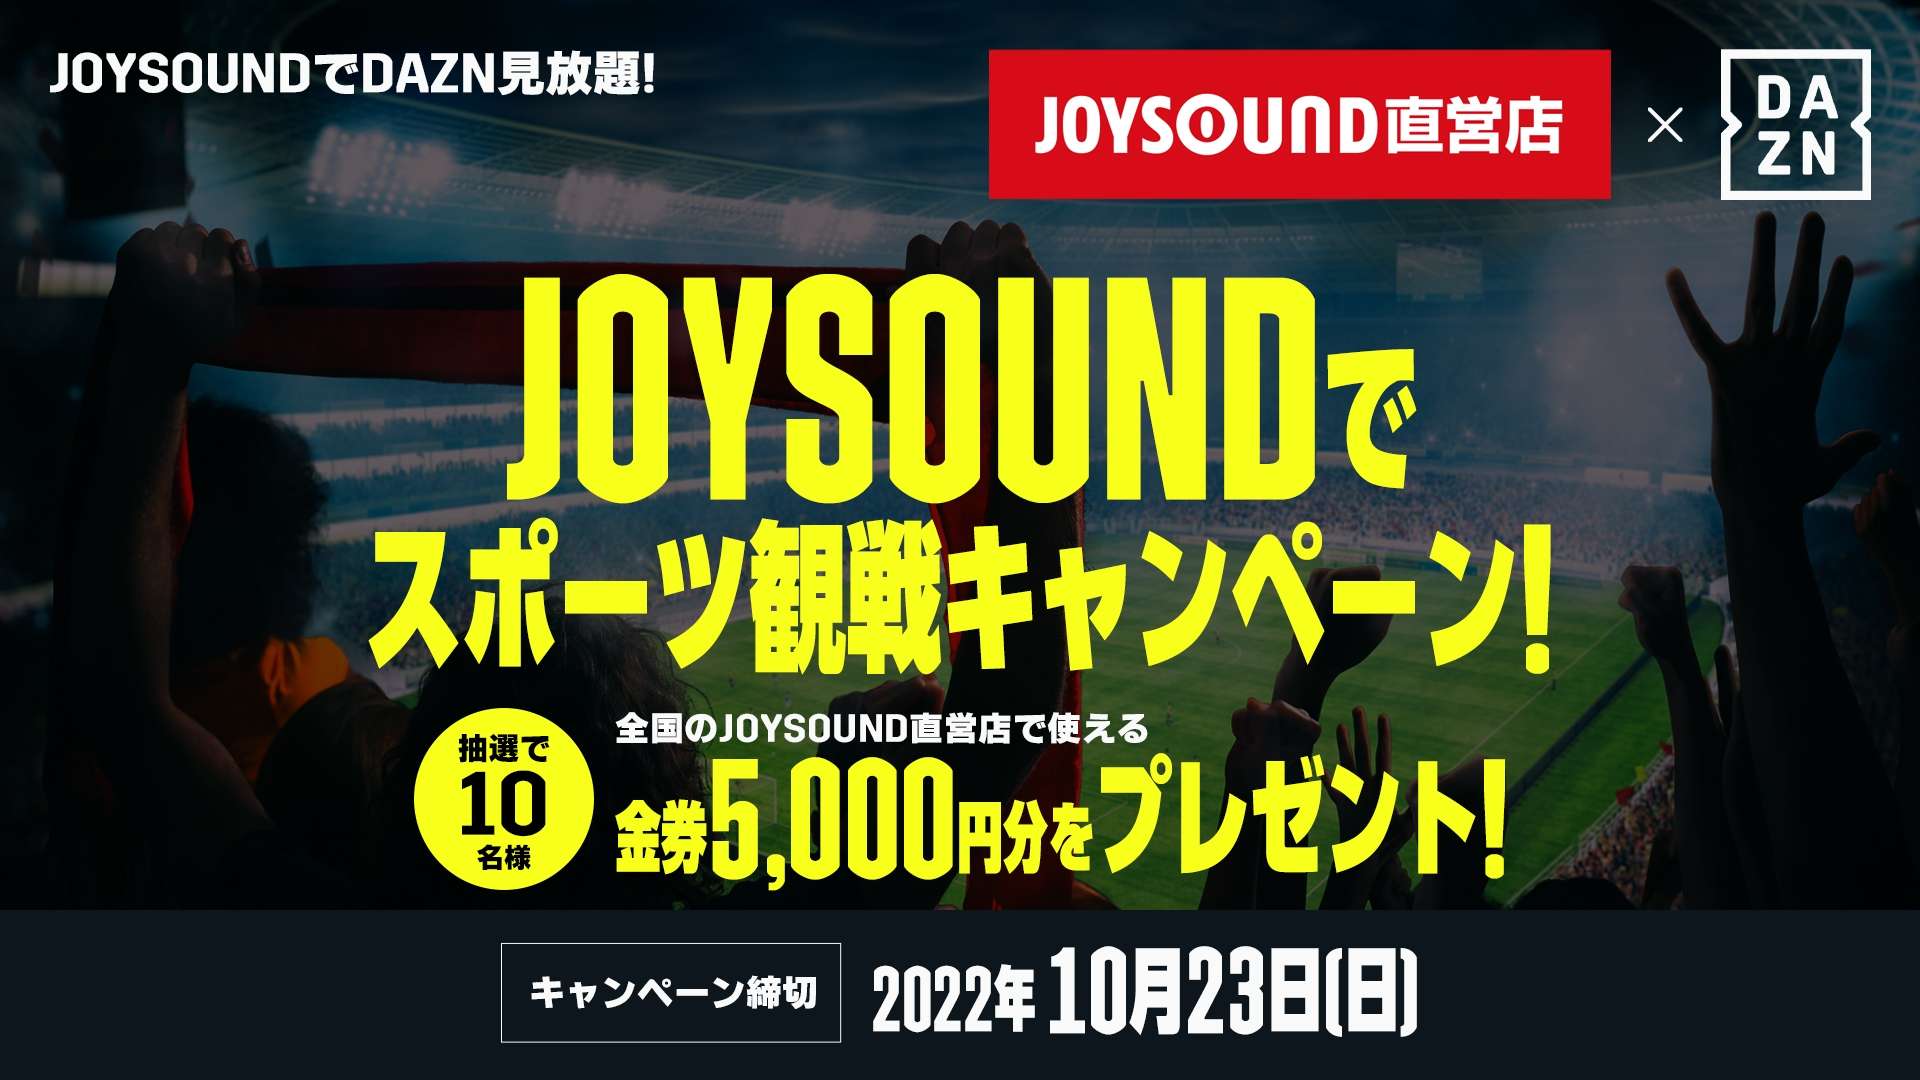 Joysound_Dazn_2